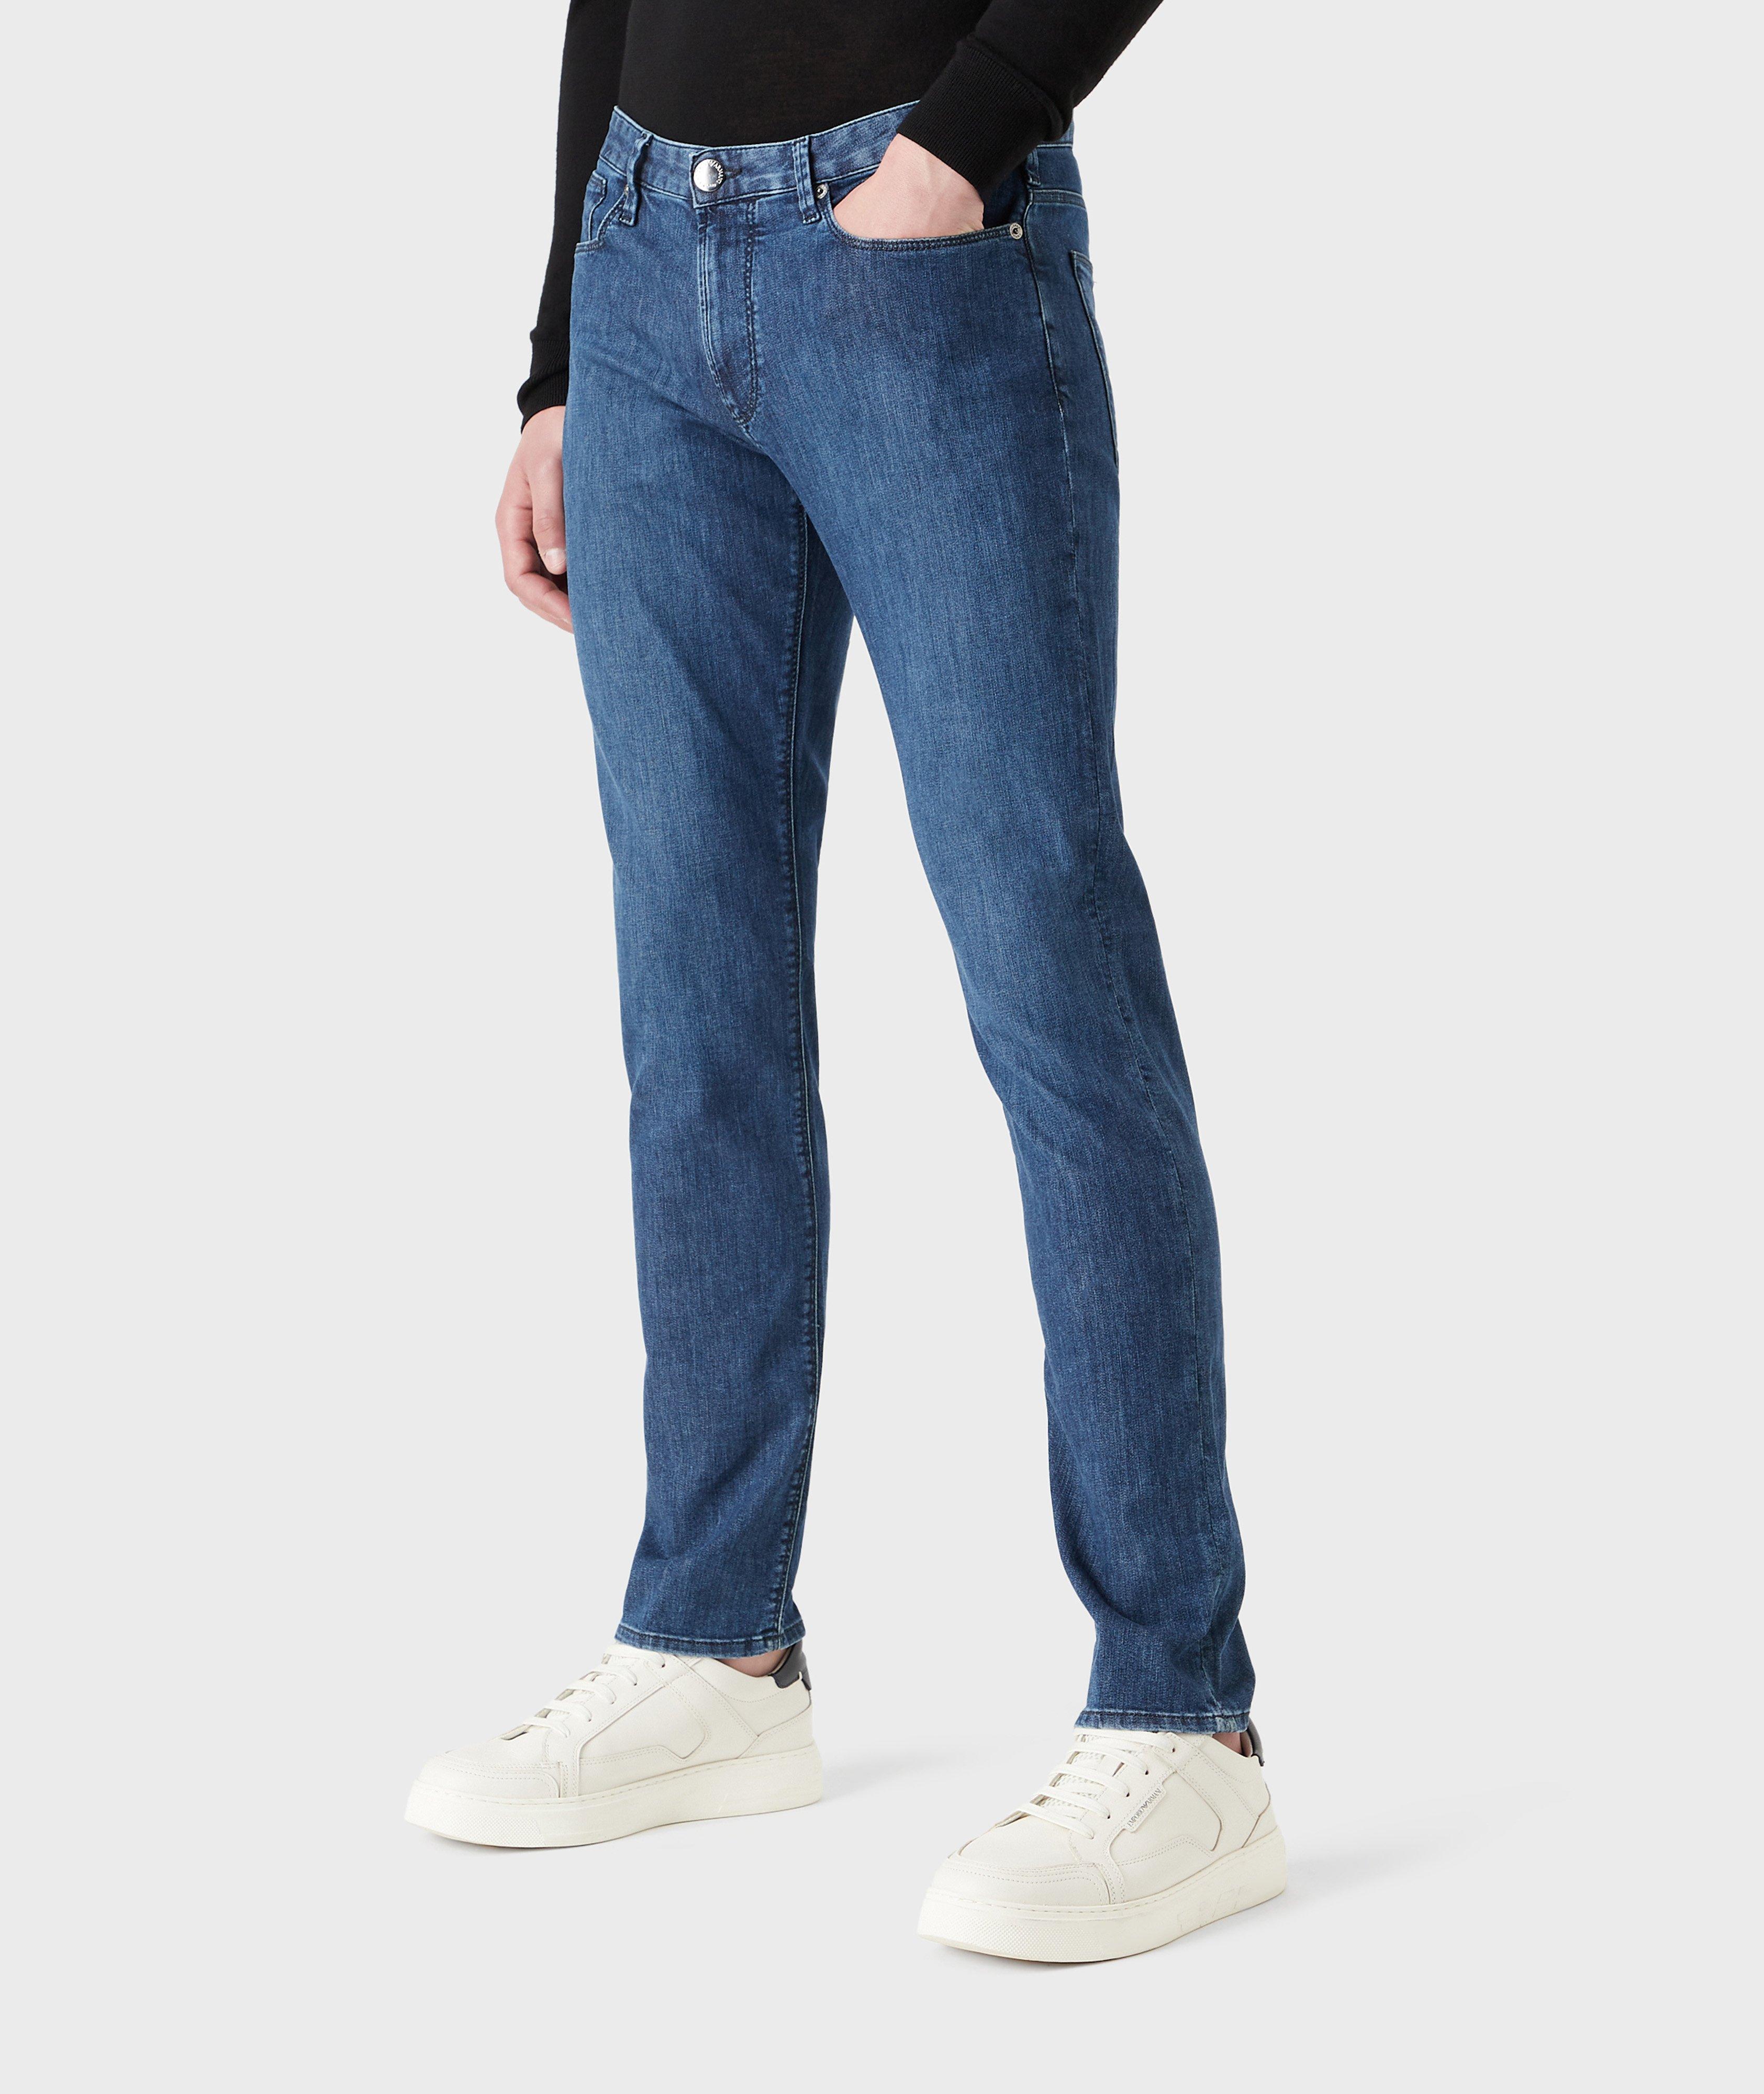 J06 Slim-Fit Cotton-Blend Jeans image 1